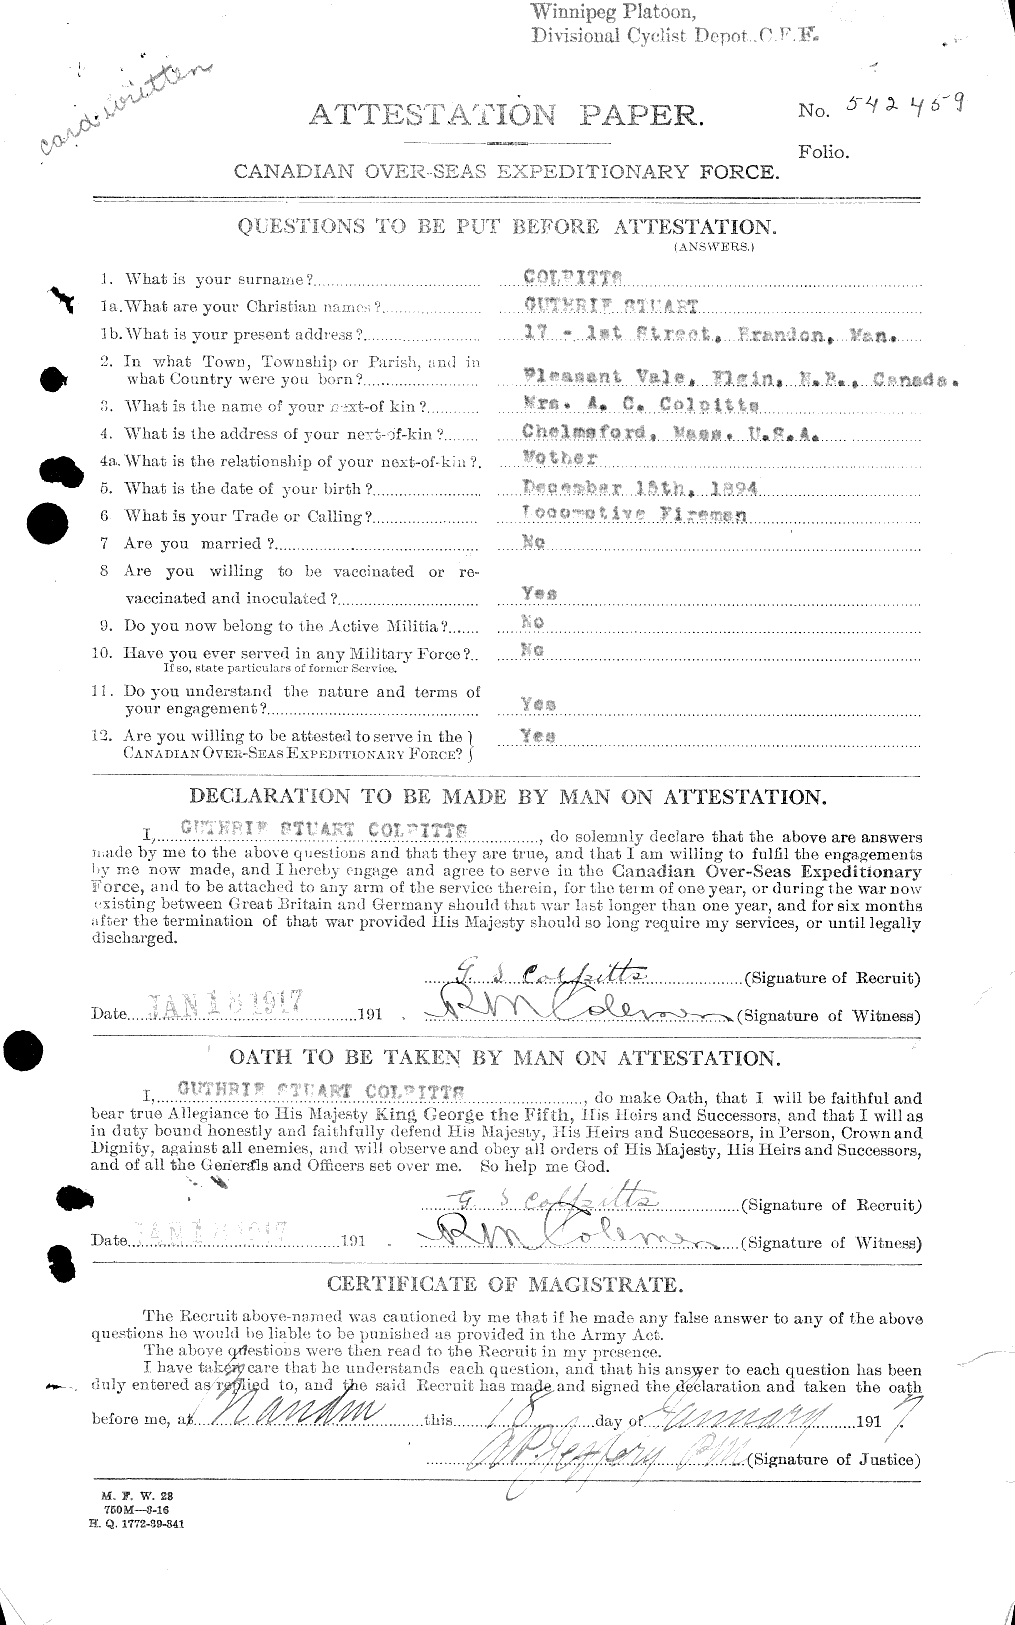 Dossiers du Personnel de la Première Guerre mondiale - CEC 040815a